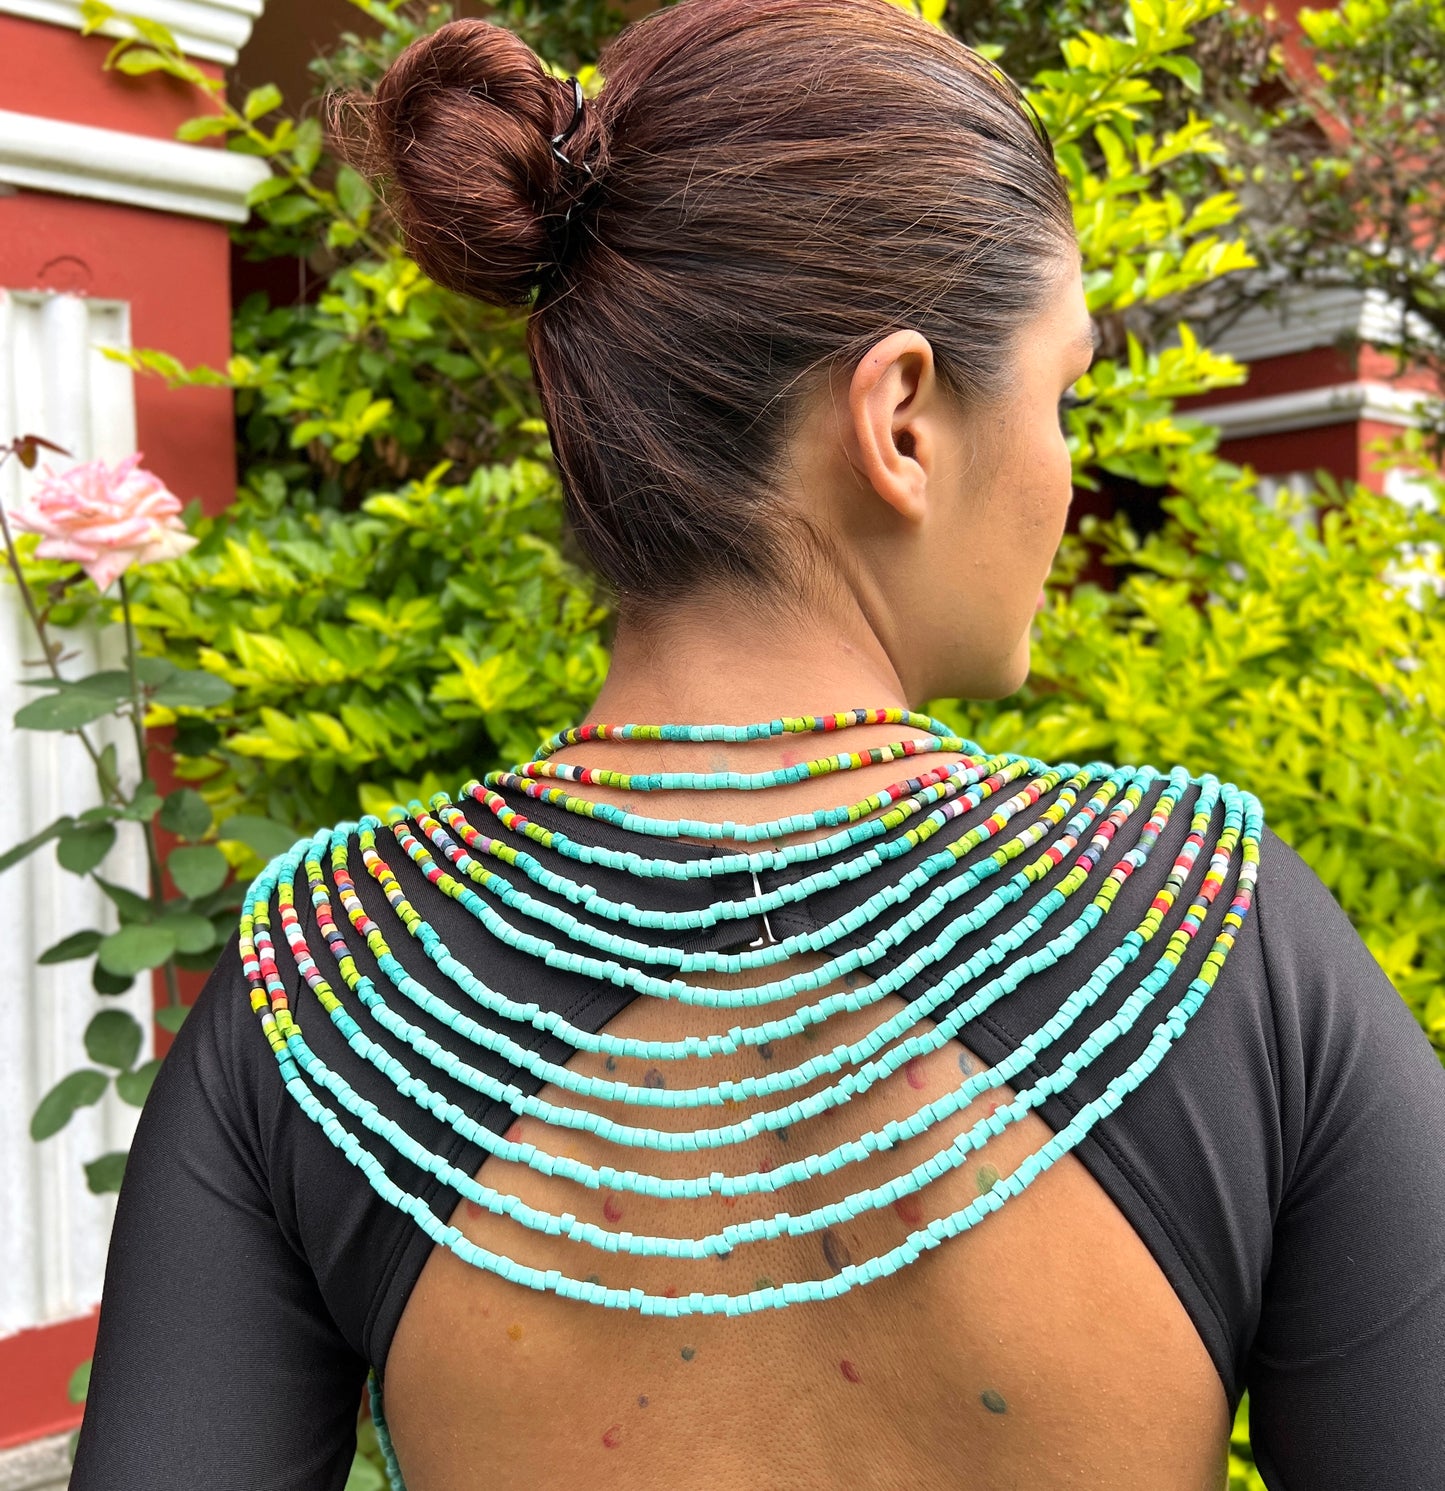 Body Jewelry with Beaded Chains - "Warrior", Isla de Pajaro